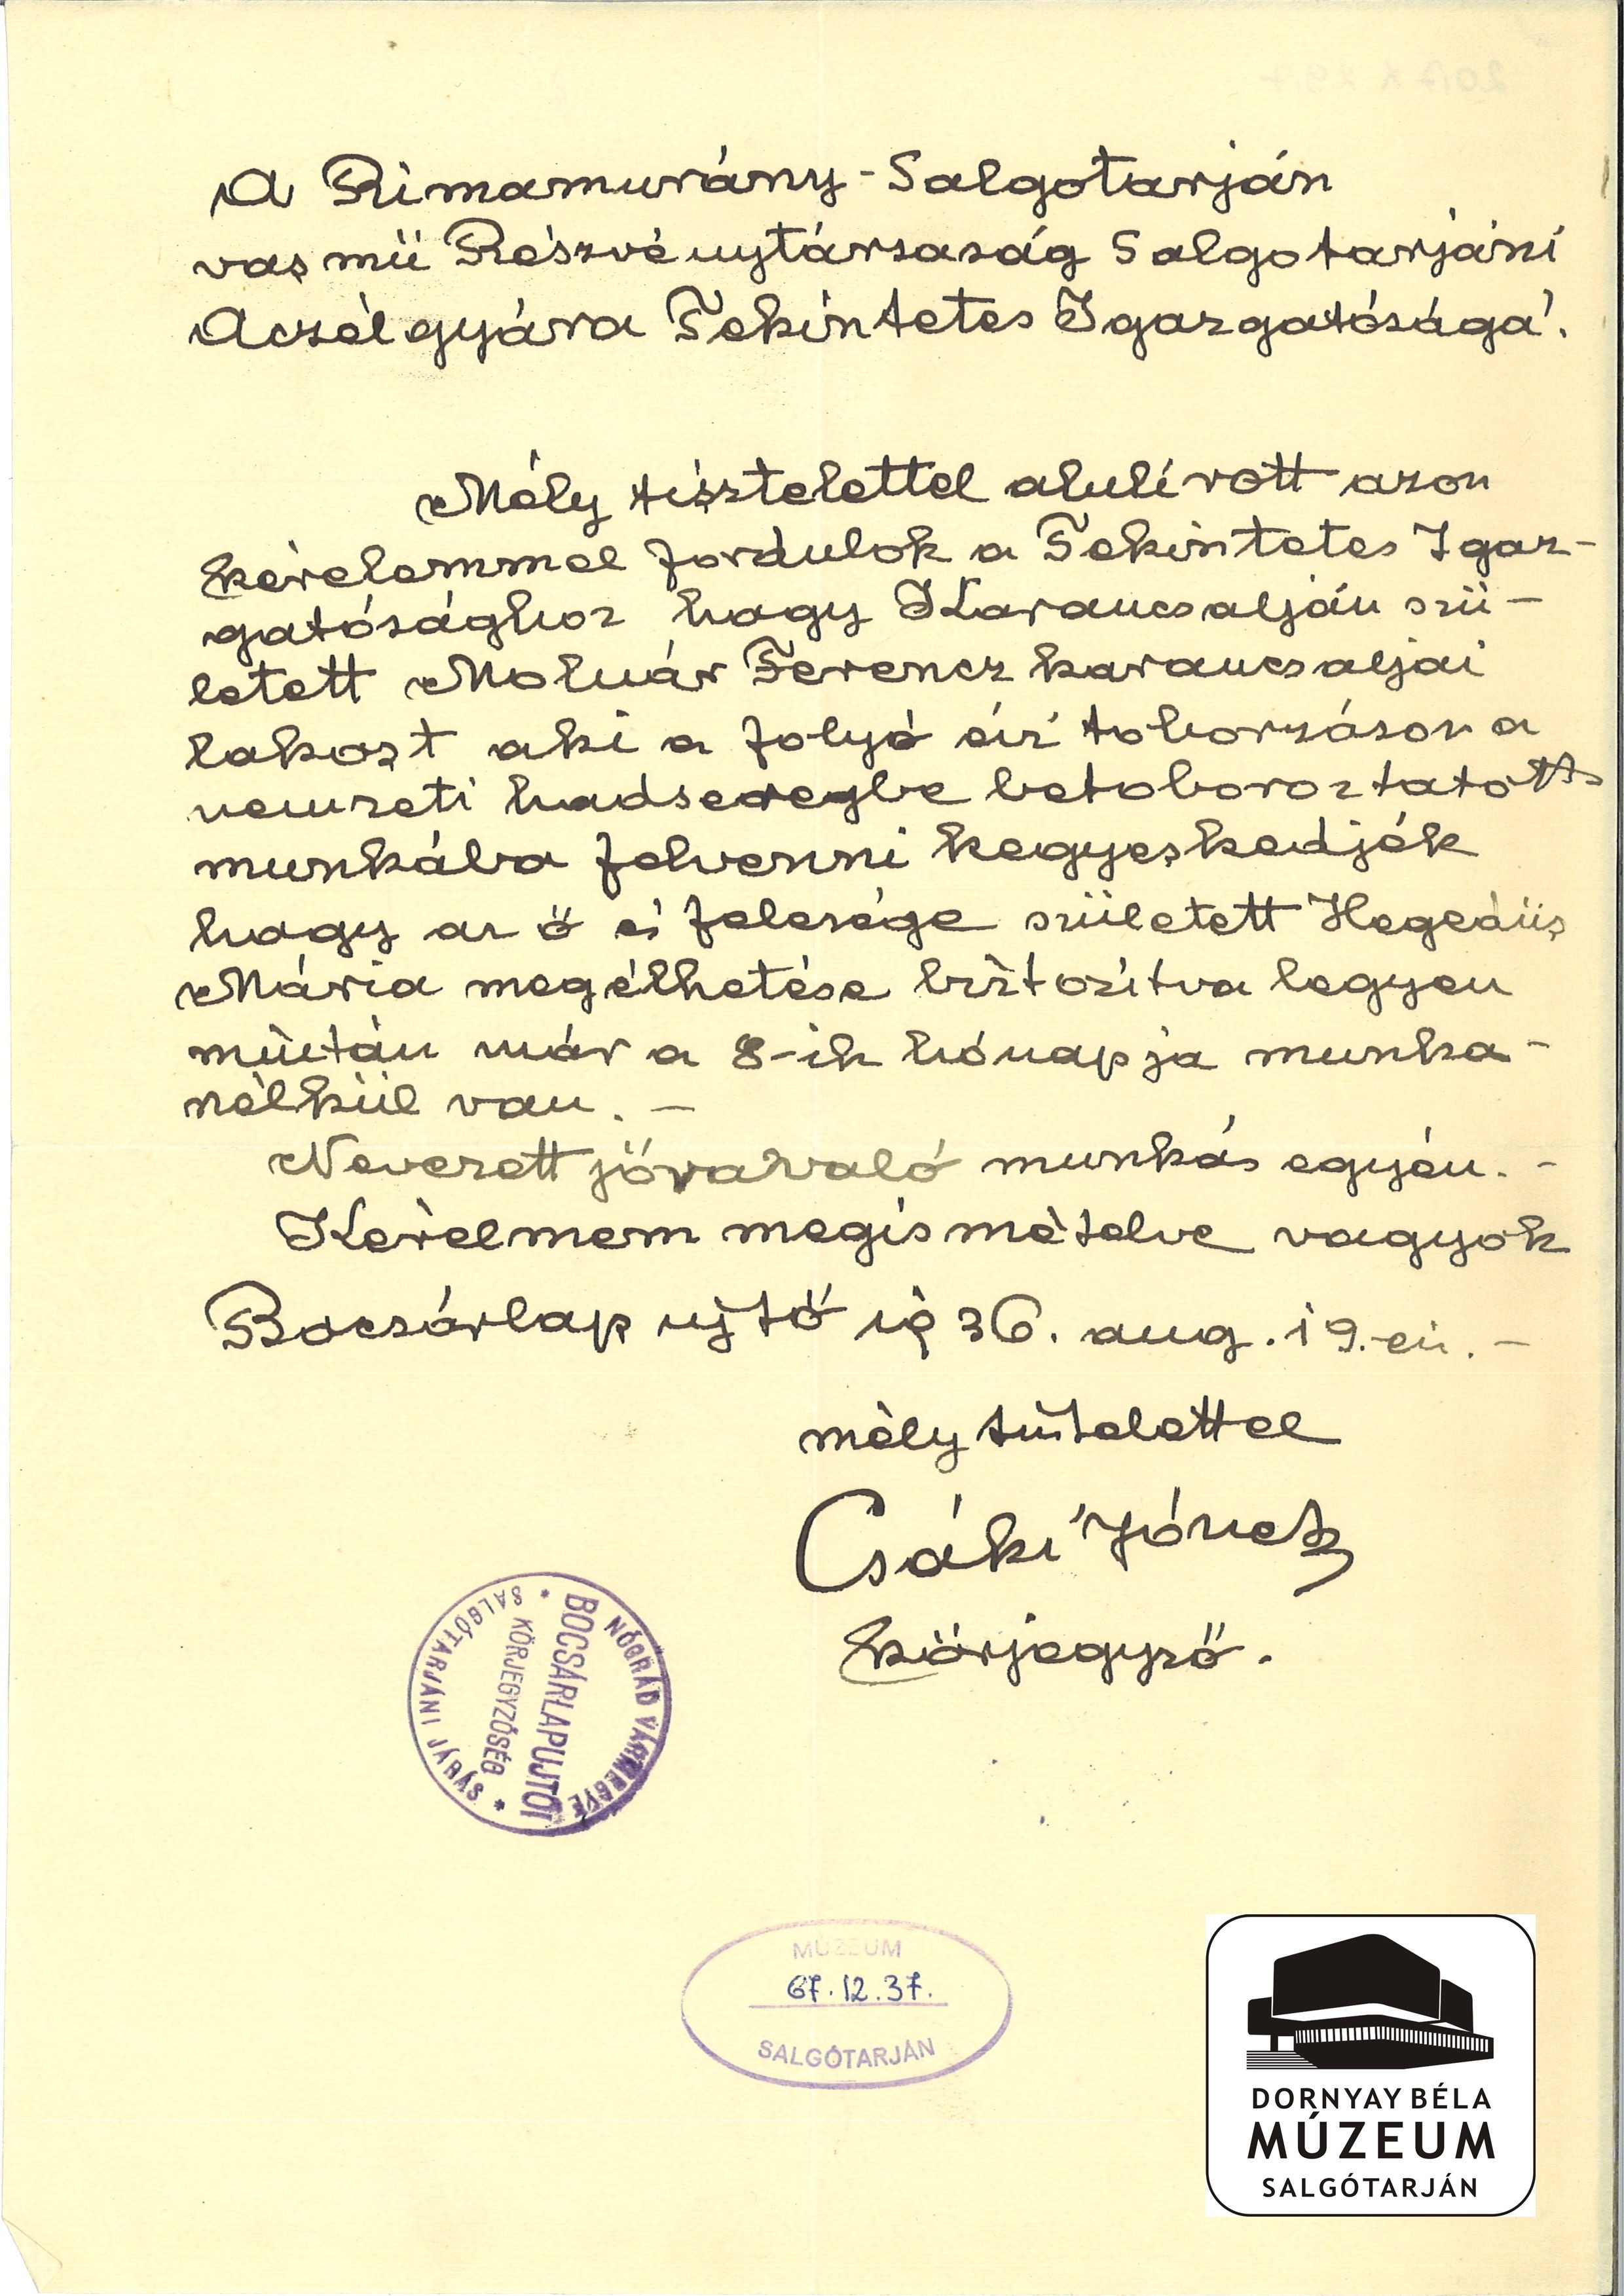 Molnár Ferenc, karancsaljai lakos kéri, hogy az Acélgyárban munkásként alkalmazzák. Körjegyzői fogalmazás (Dornyay Béla Múzeum, Salgótarján CC BY-NC-SA)